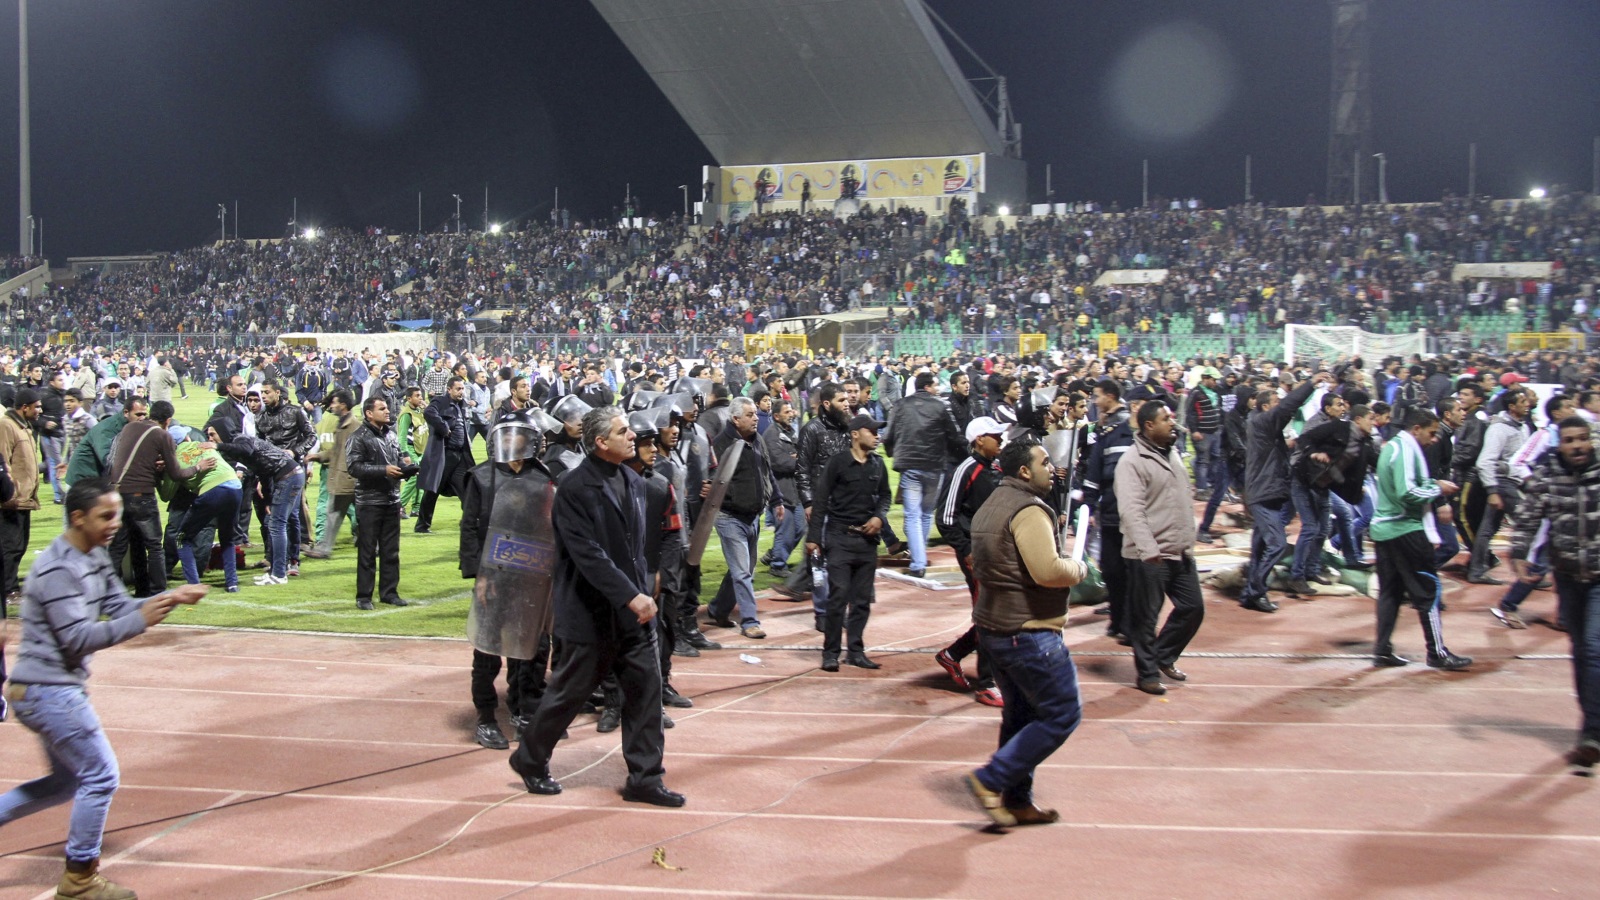 الملعب امتلأ بجماهير المصري الذين قفزوا من على الأسوار بعد نهاية المباراة مباشرة والشرطة تتفرج (رويترز)